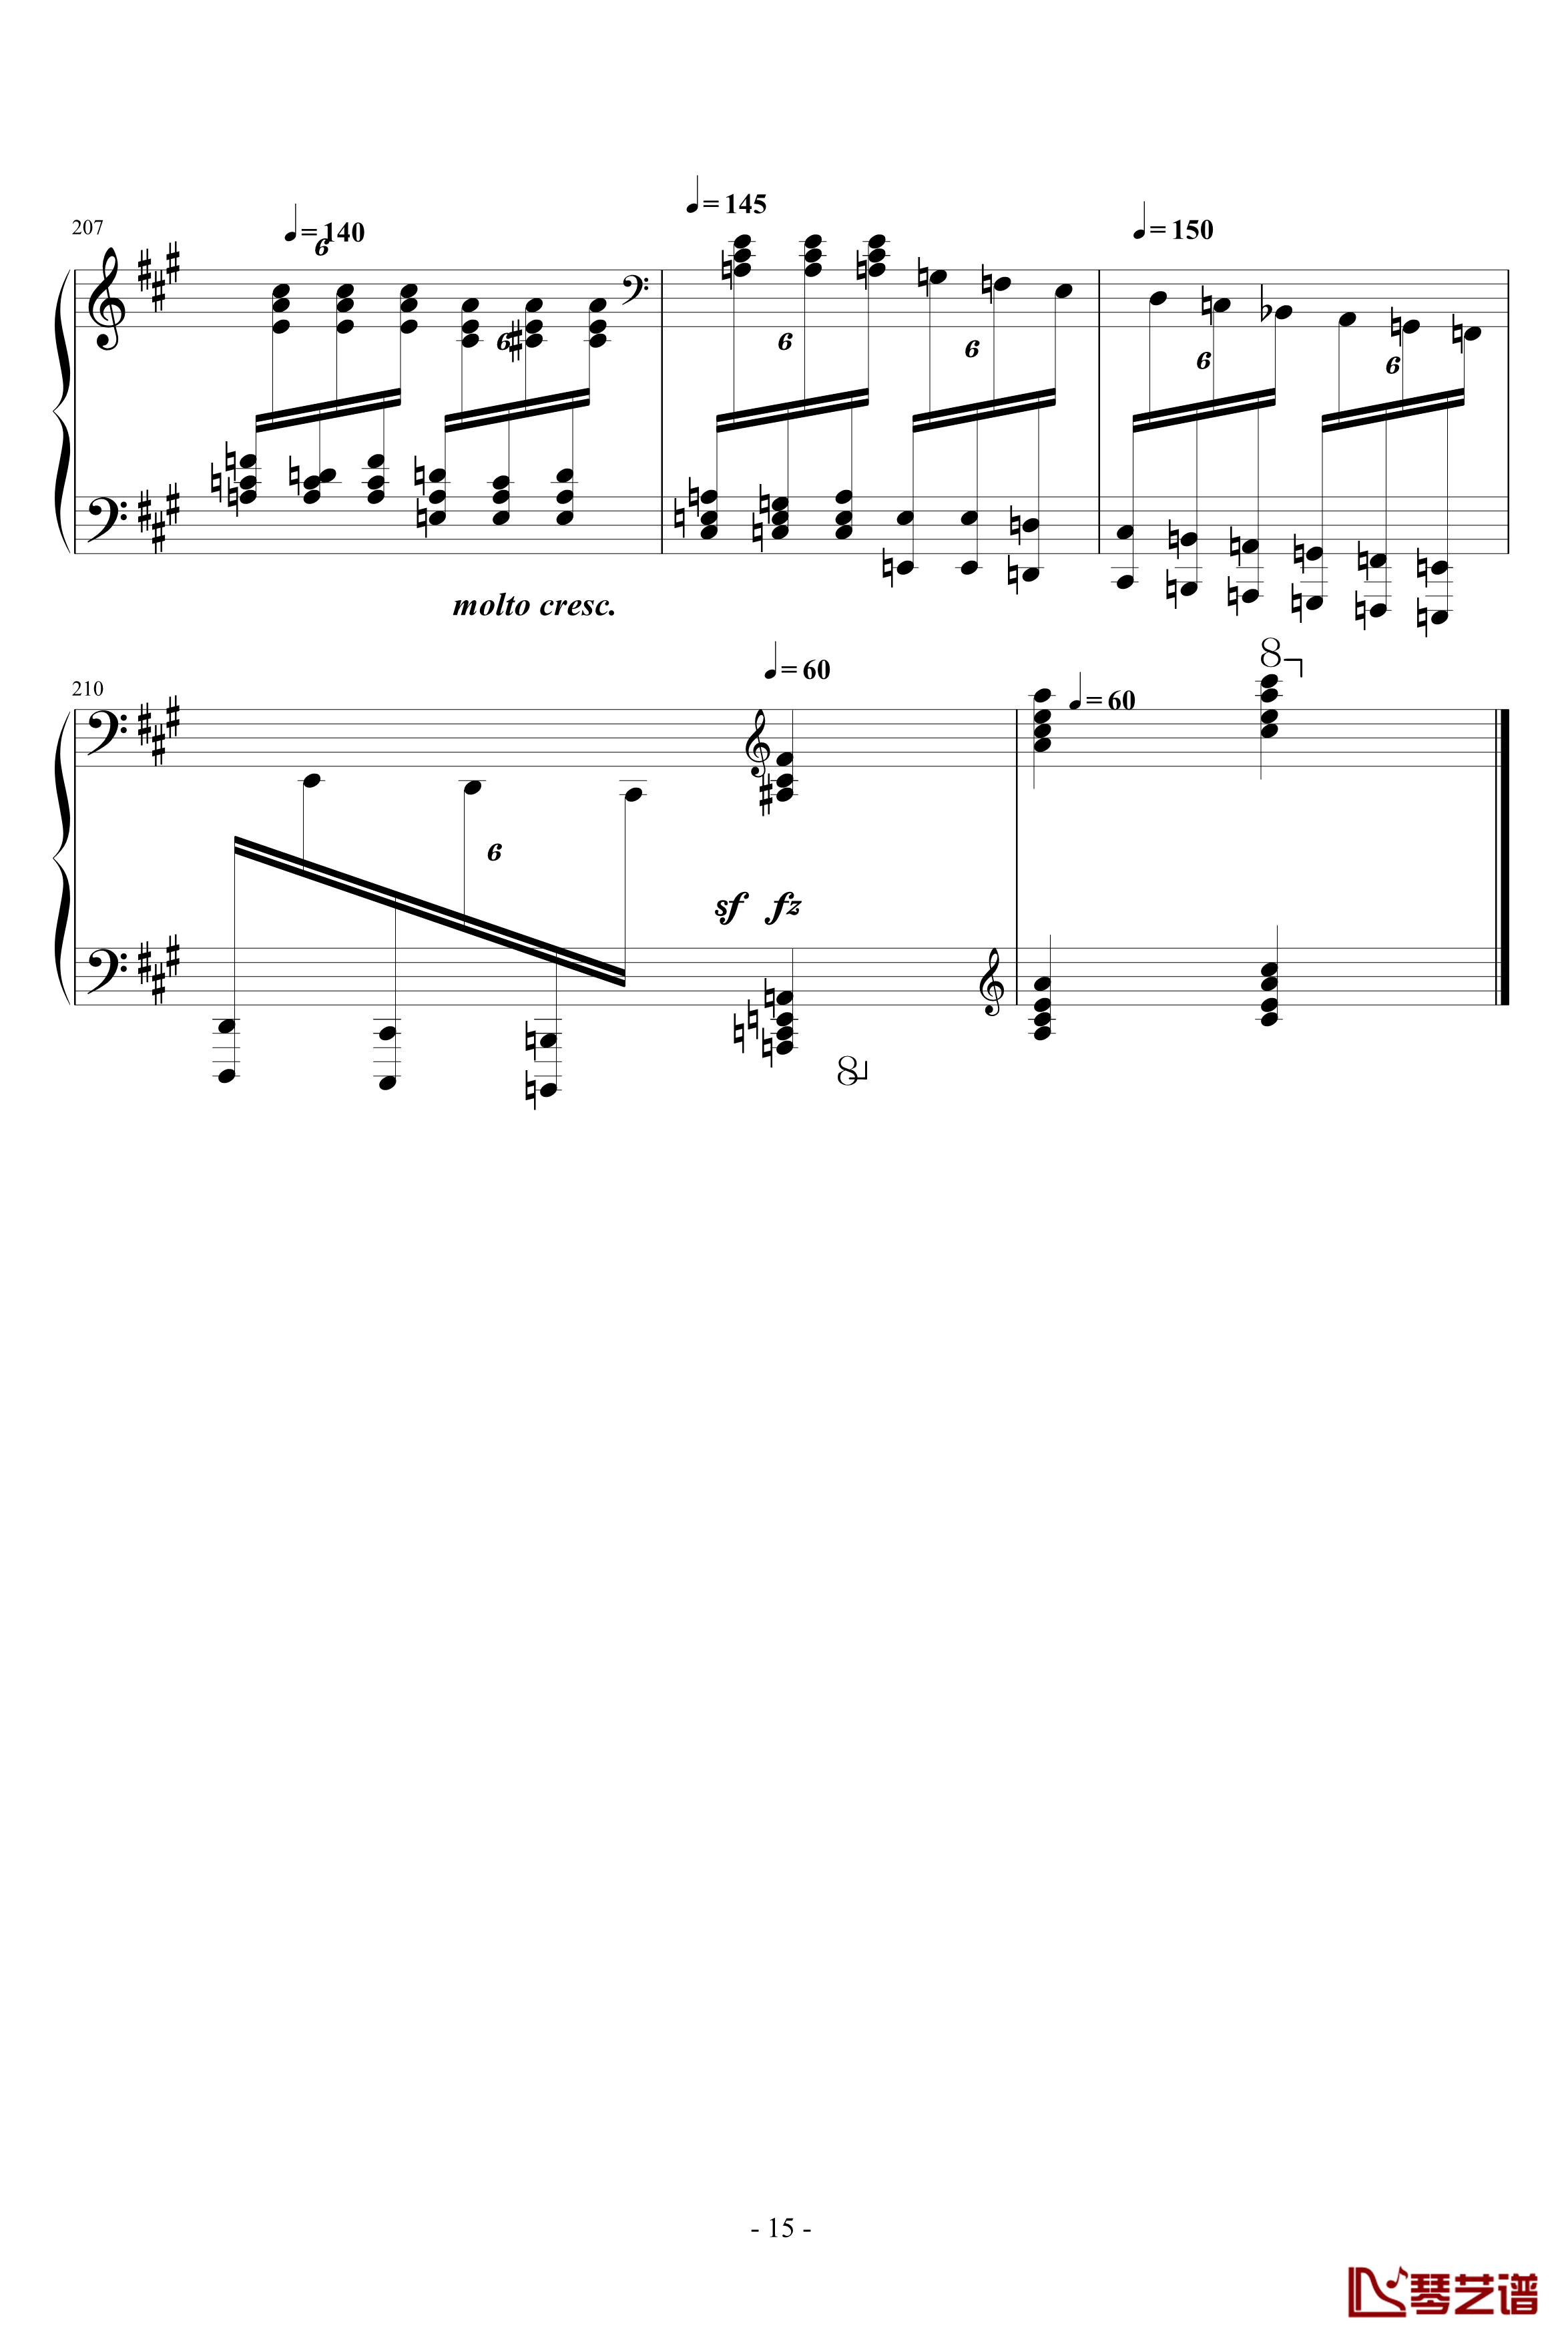 瓦洛多斯土耳其钢琴谱-爵士版-完成品-瓦洛多斯15